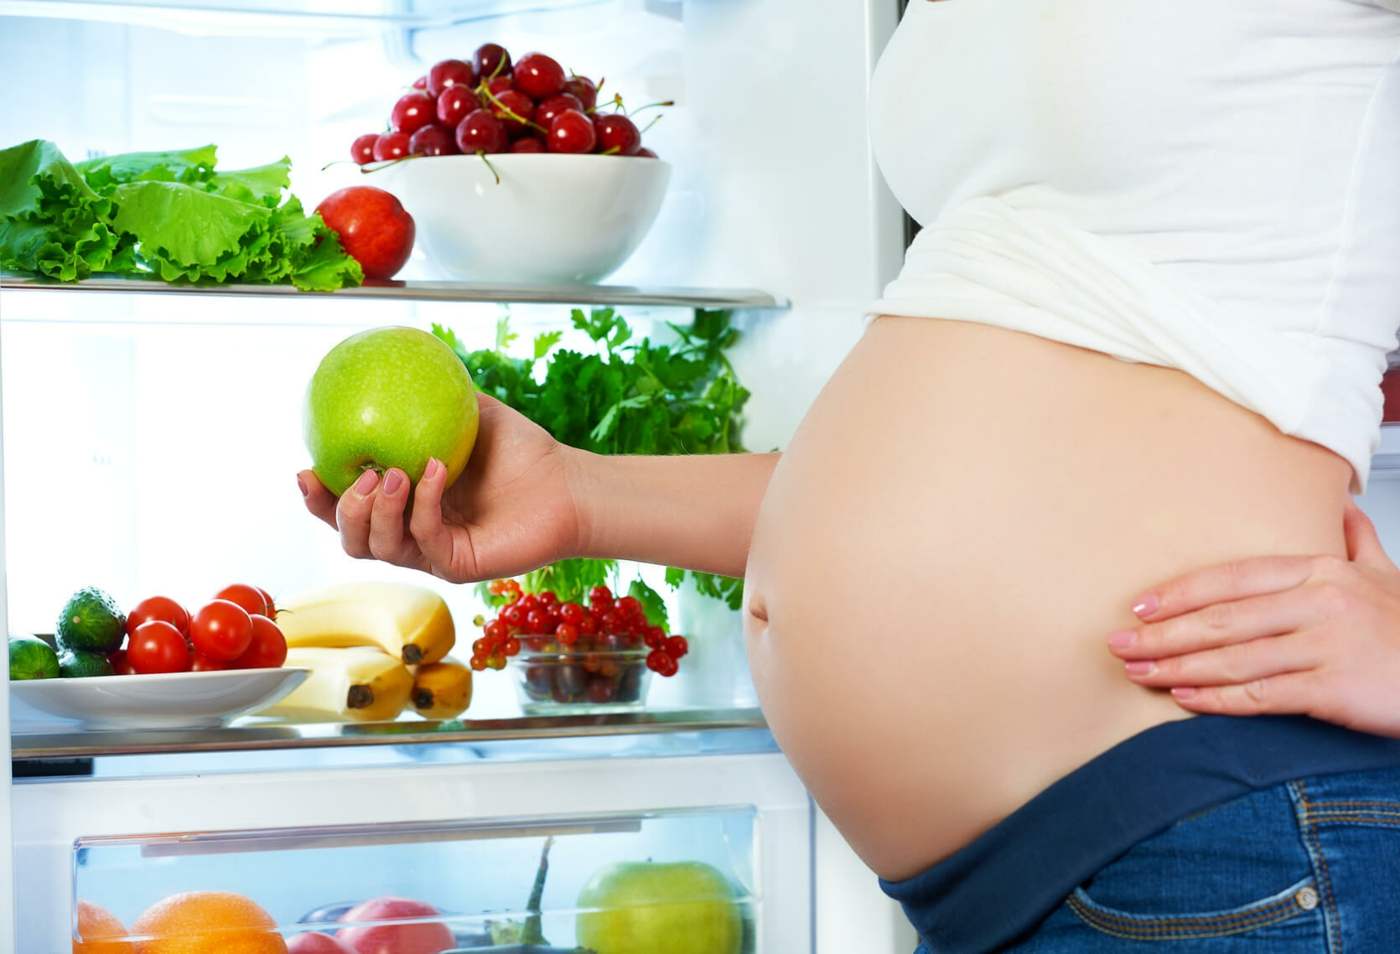 Vegane Ernährung in der Schwangerschaft - Eine ausreichende Zufuhr des Nährstoffbedarfs ist problematisch